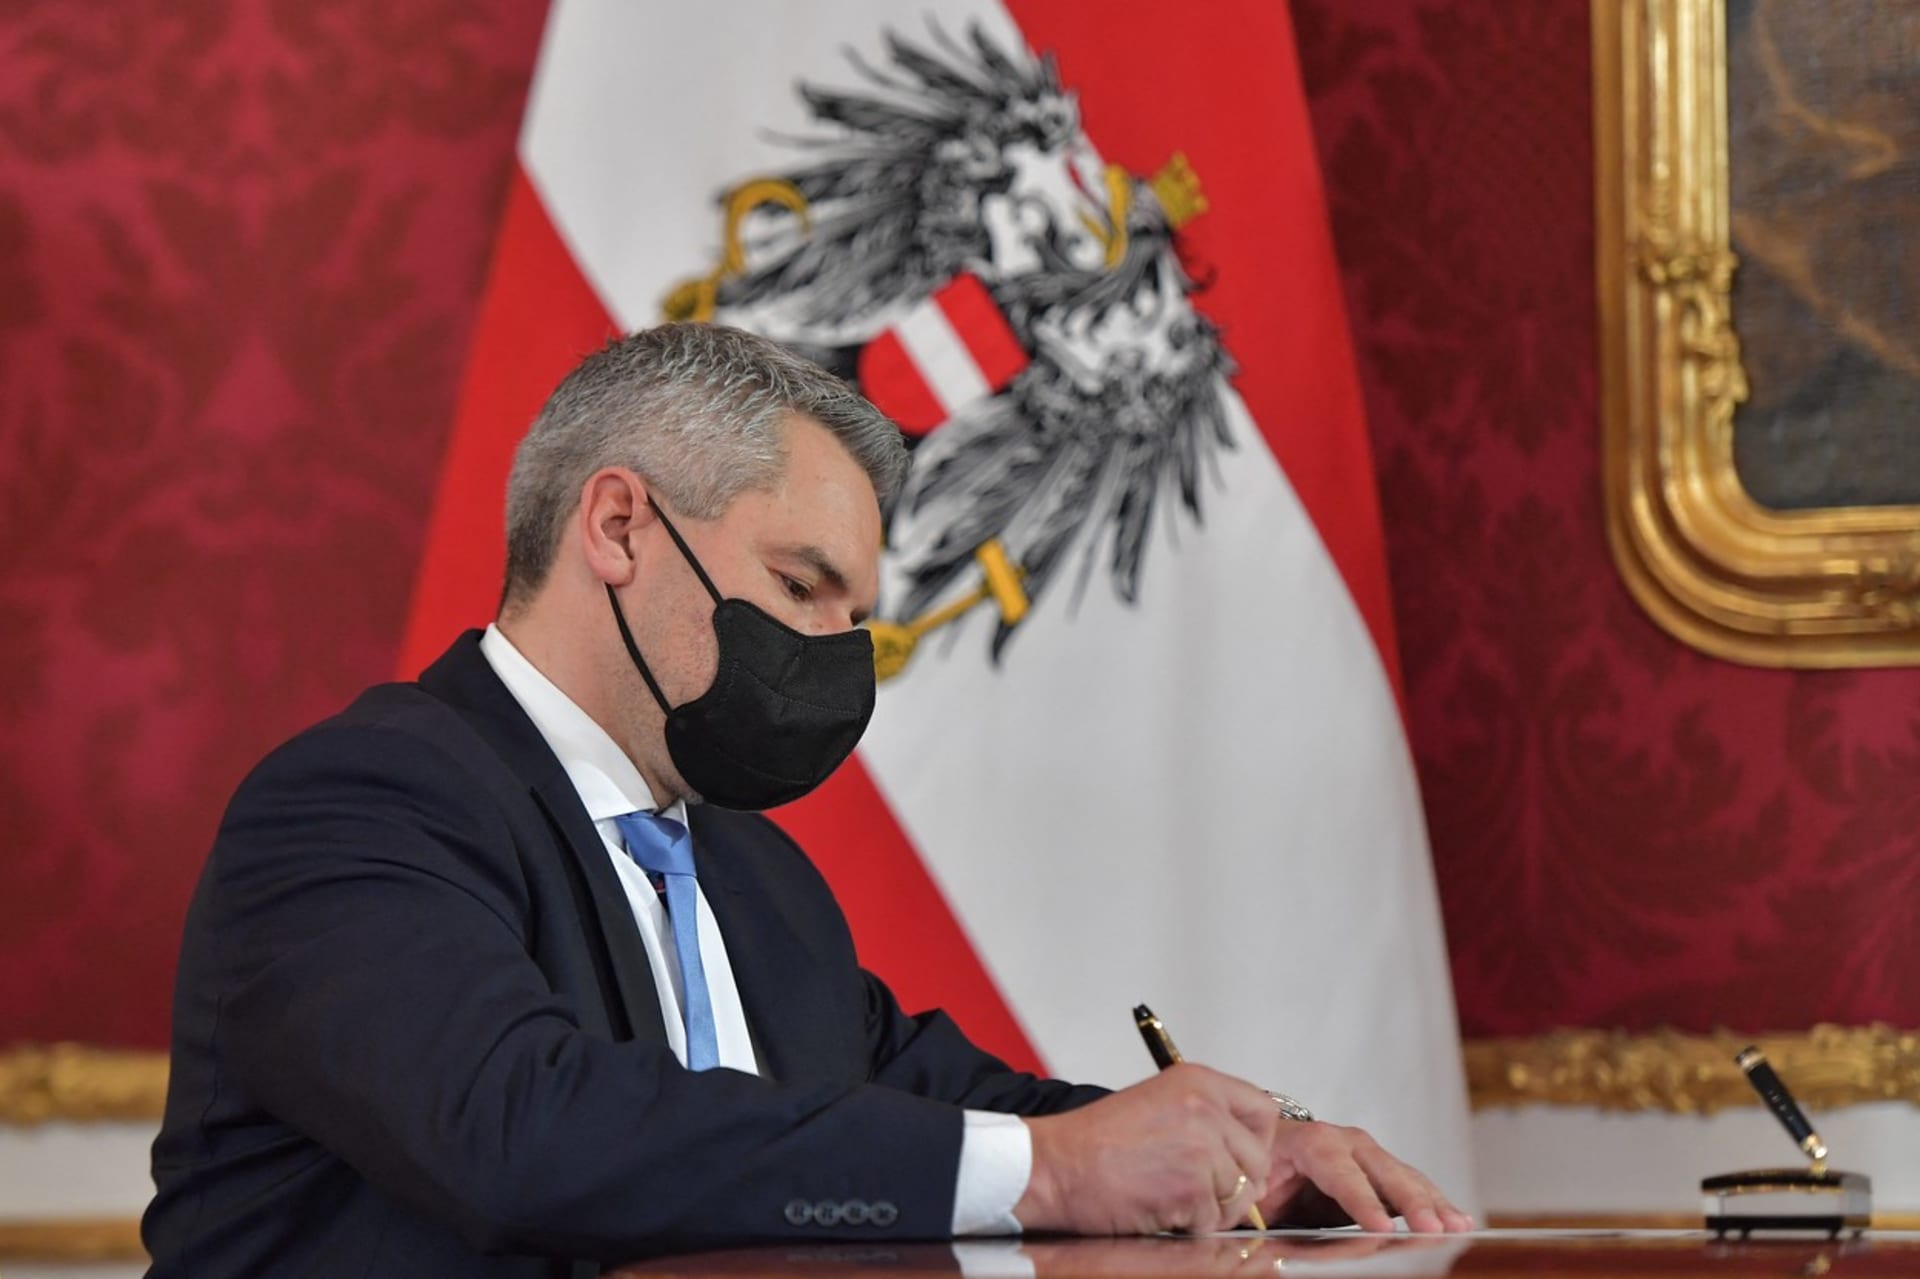 Karl Nehammer se stal novým rakouským kancléřem